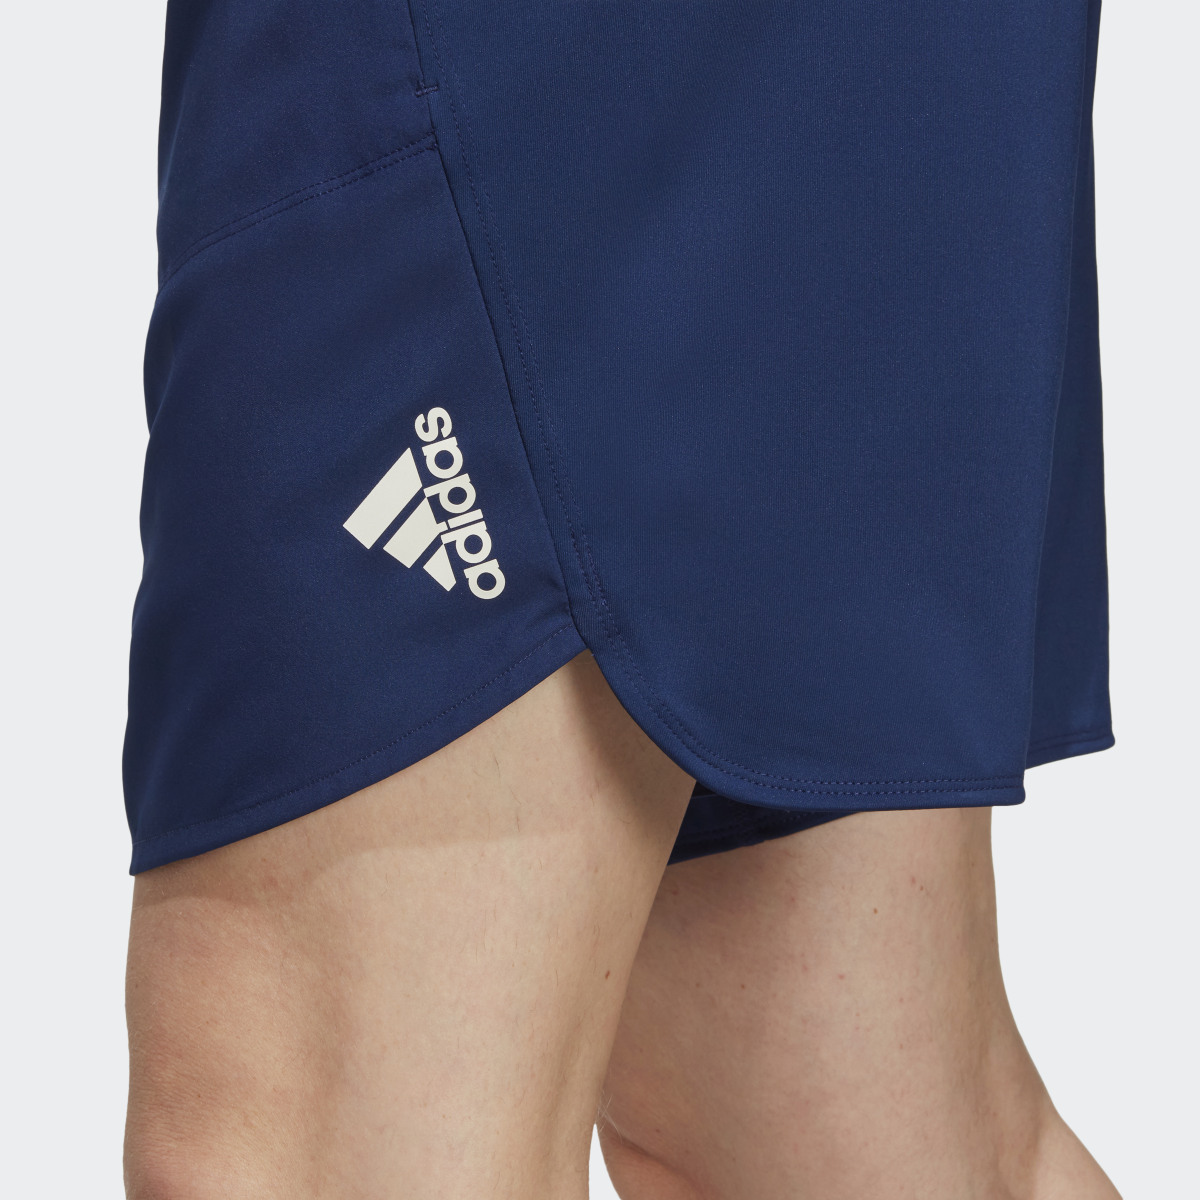 Adidas Designed for Training Shorts. 5